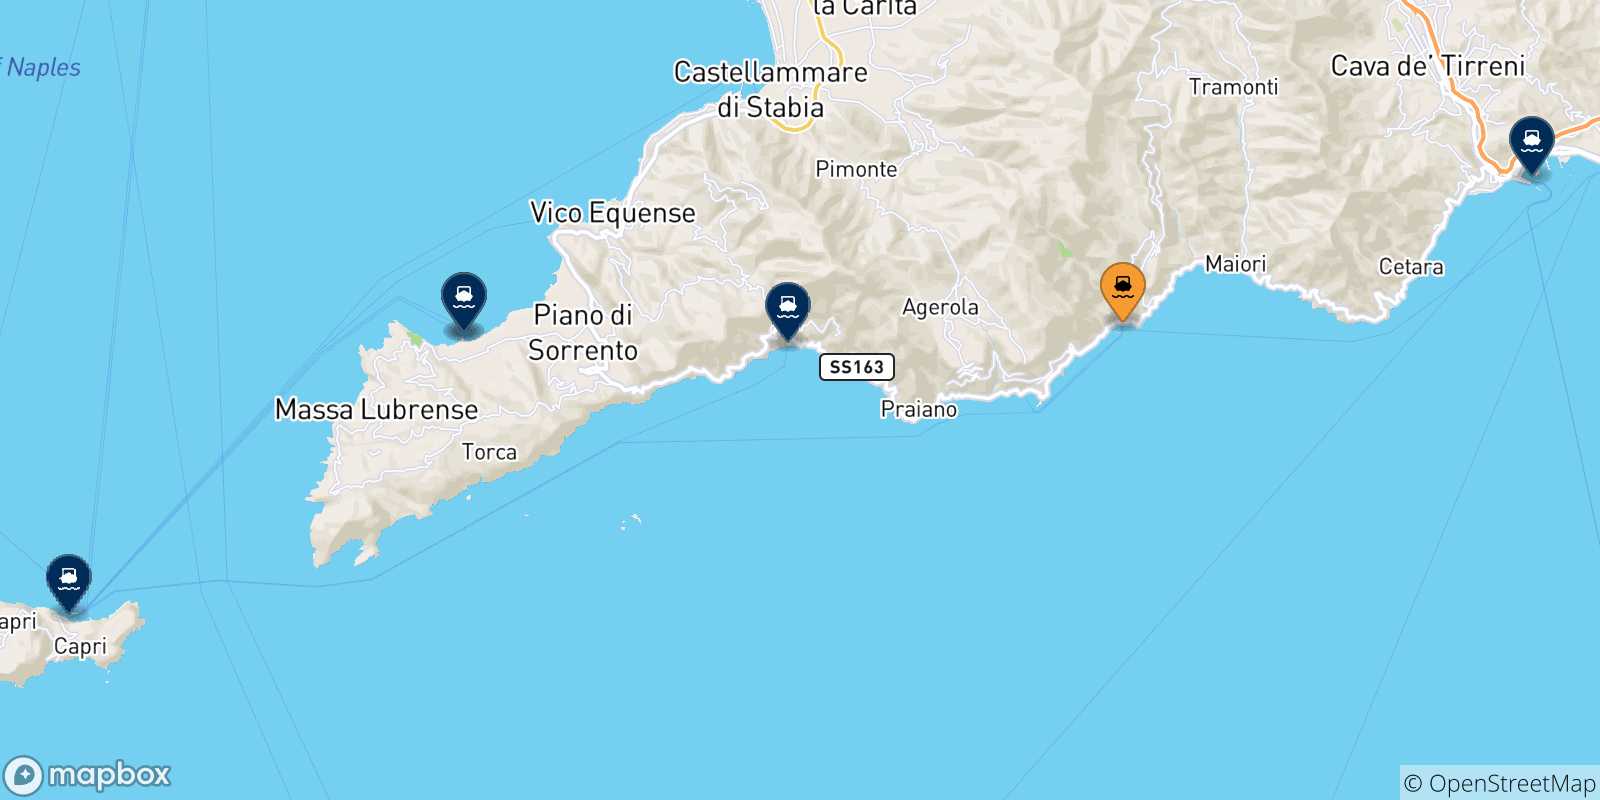 Mapa de las posibles rutas entre Amalfi y  Italia